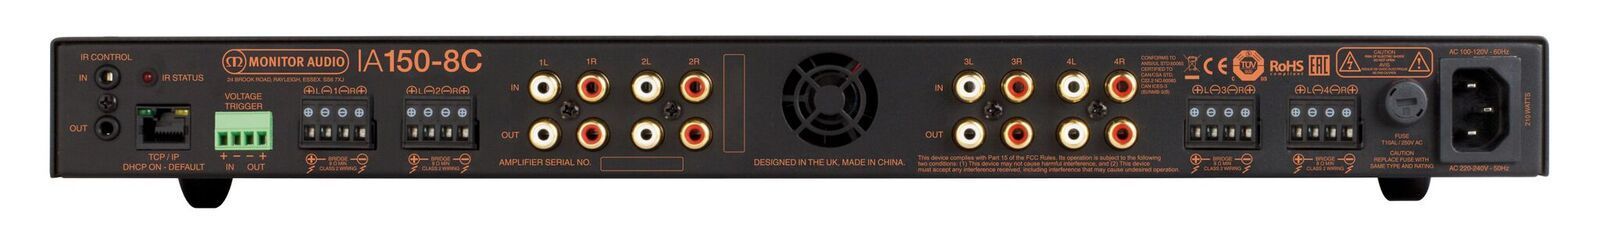 Monitor Audio IA150-8C päätevahvistin